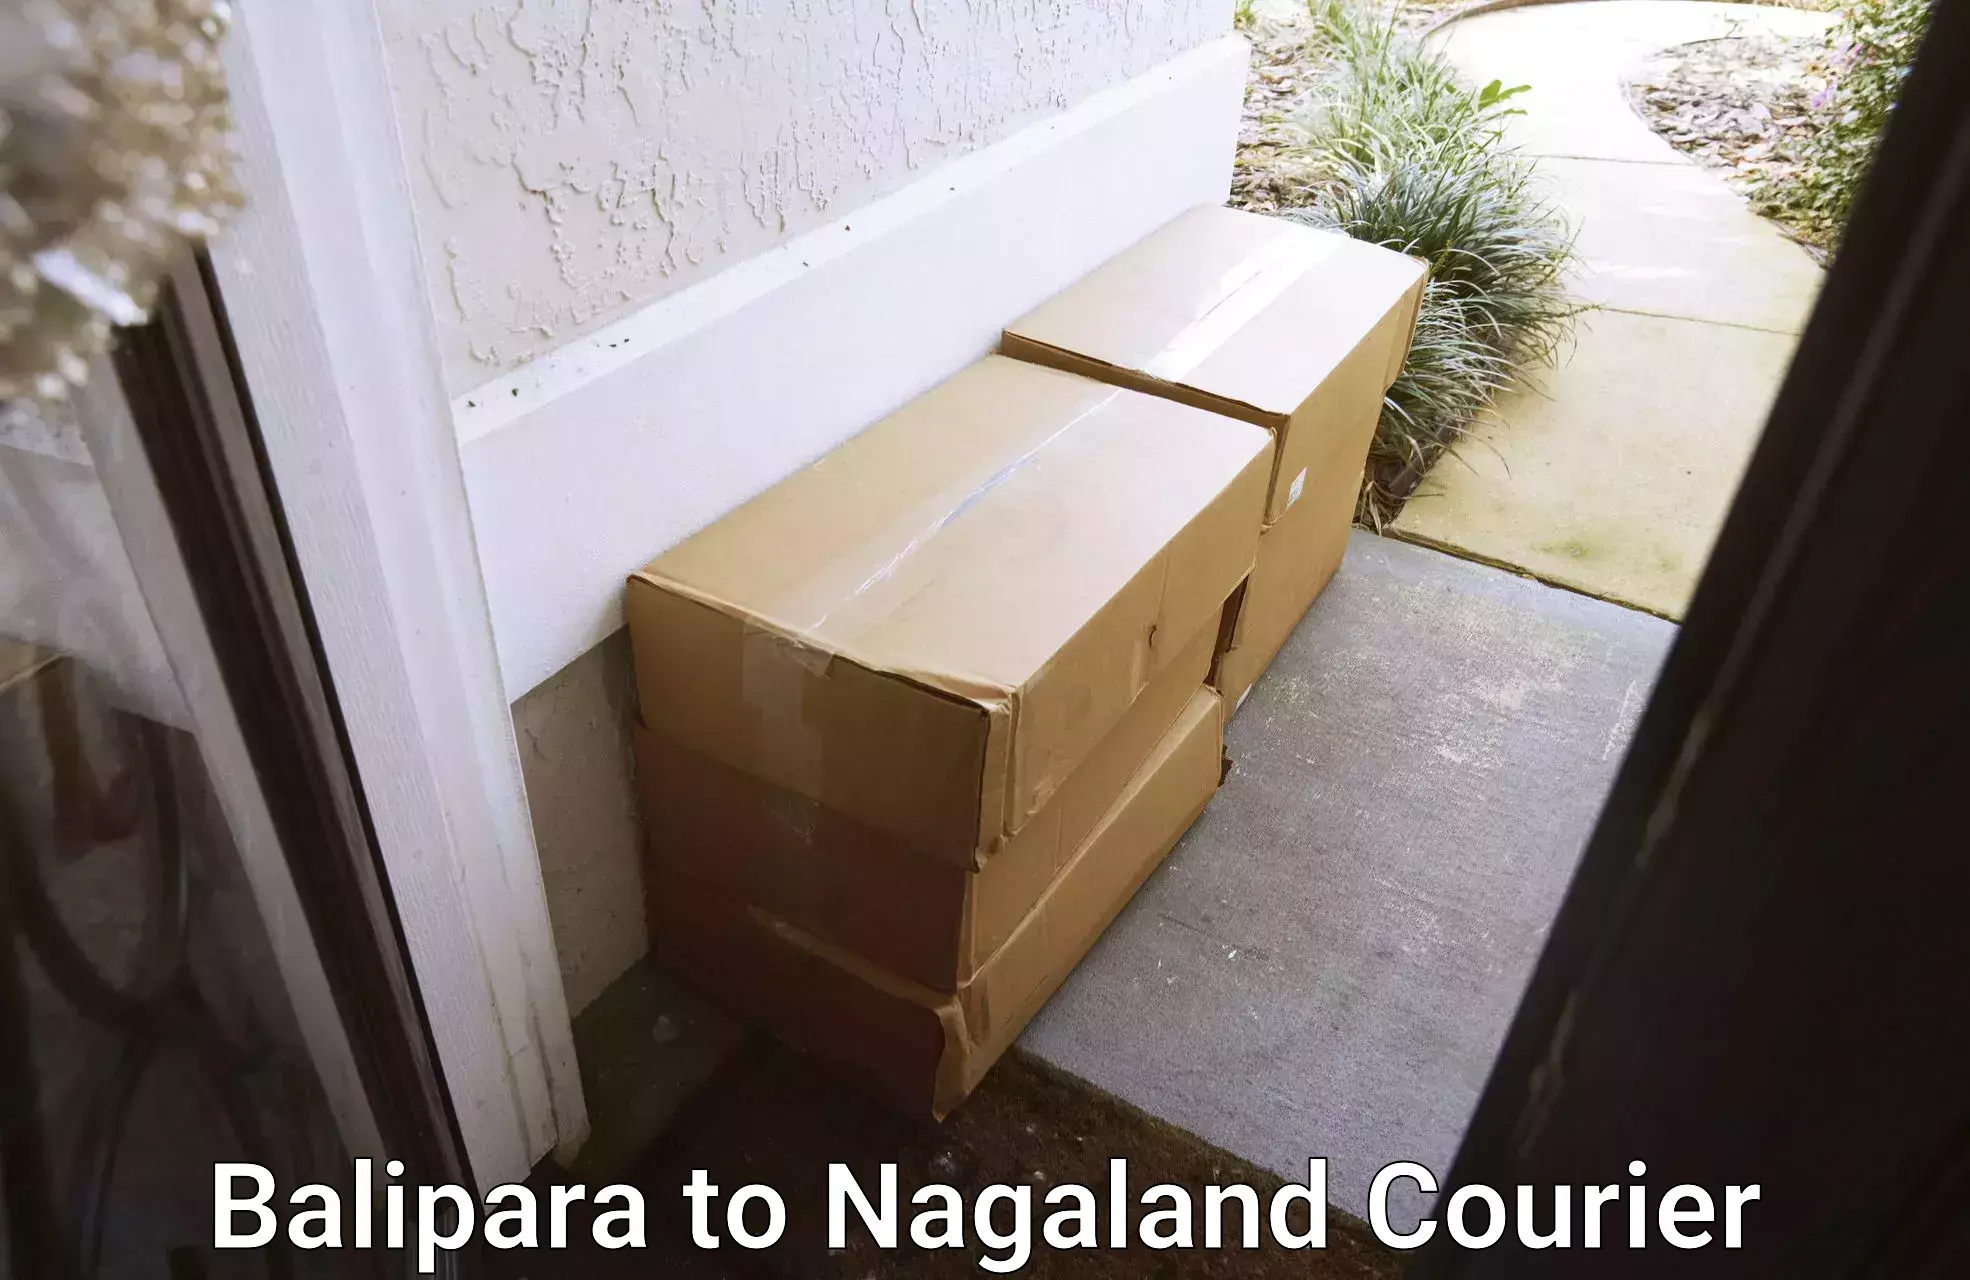 High-capacity parcel service Balipara to NIT Nagaland